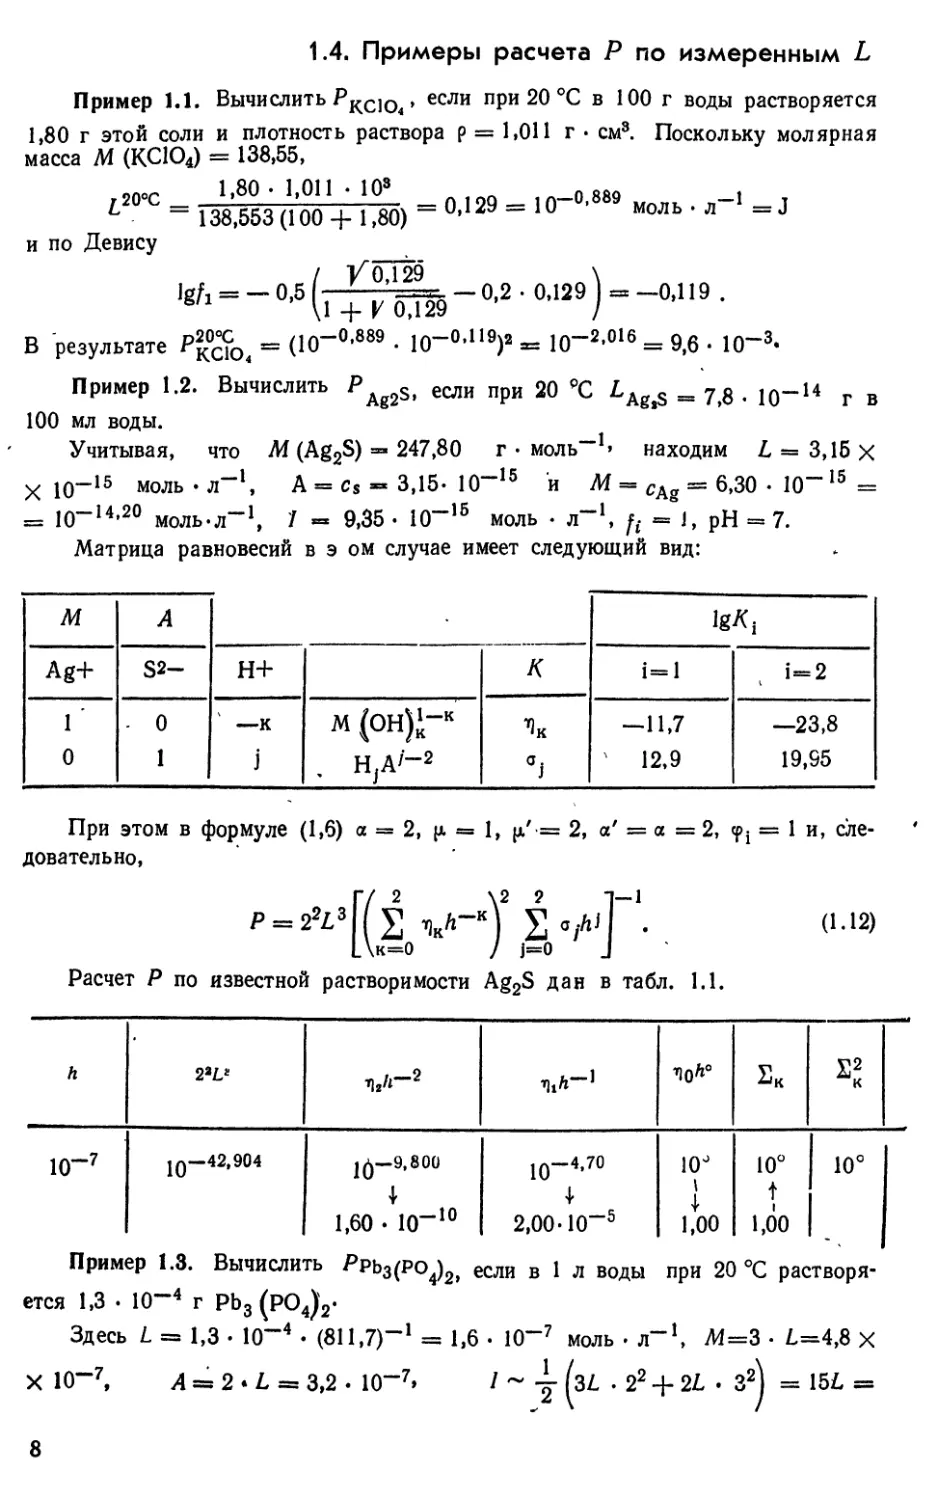 1.4. Примеры расчета Р по измеренным L